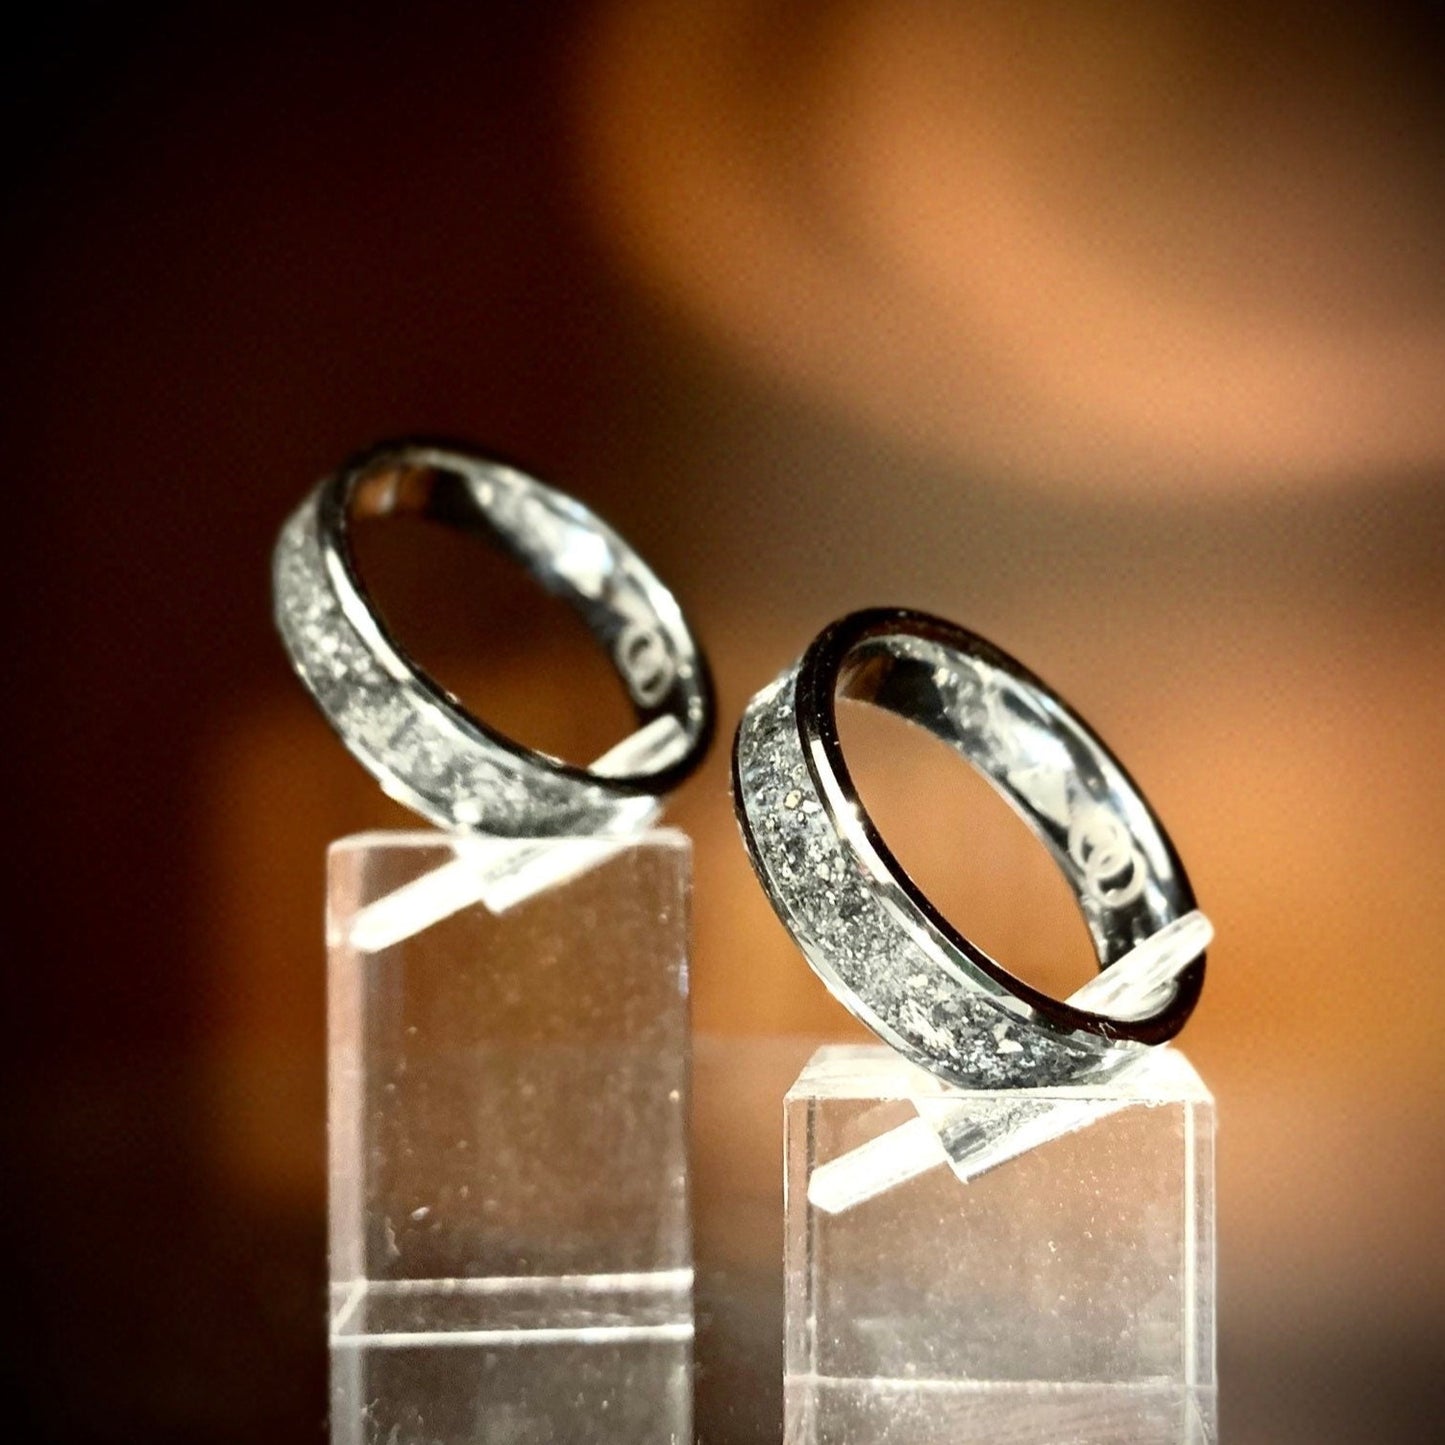 6mm Tungsten Cremation Ring